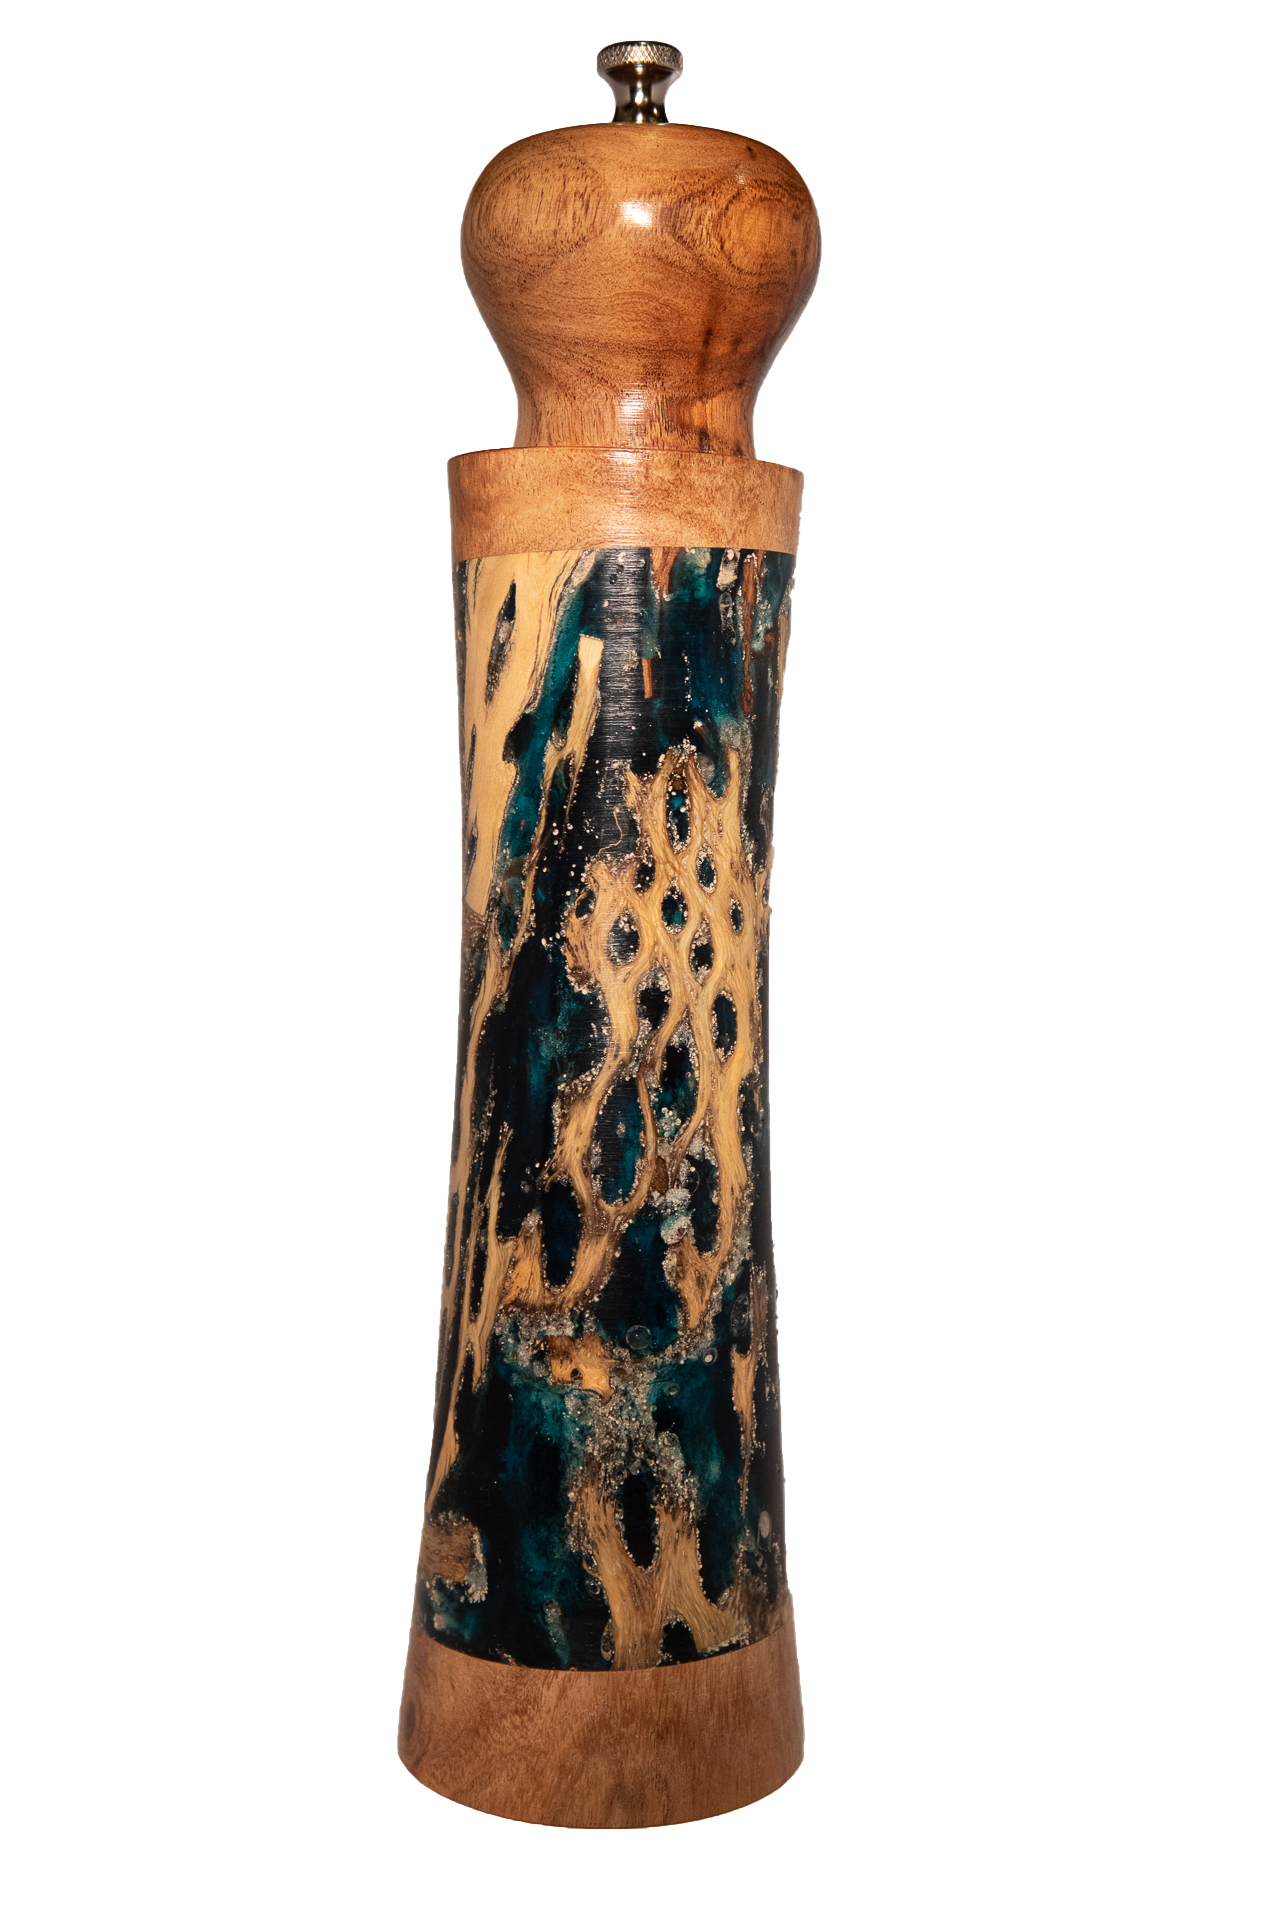 11" Pine Cones/Cholla Cactus Skeleton/Mesquite Bark cast in epoxy with Mesquite Wood Trim